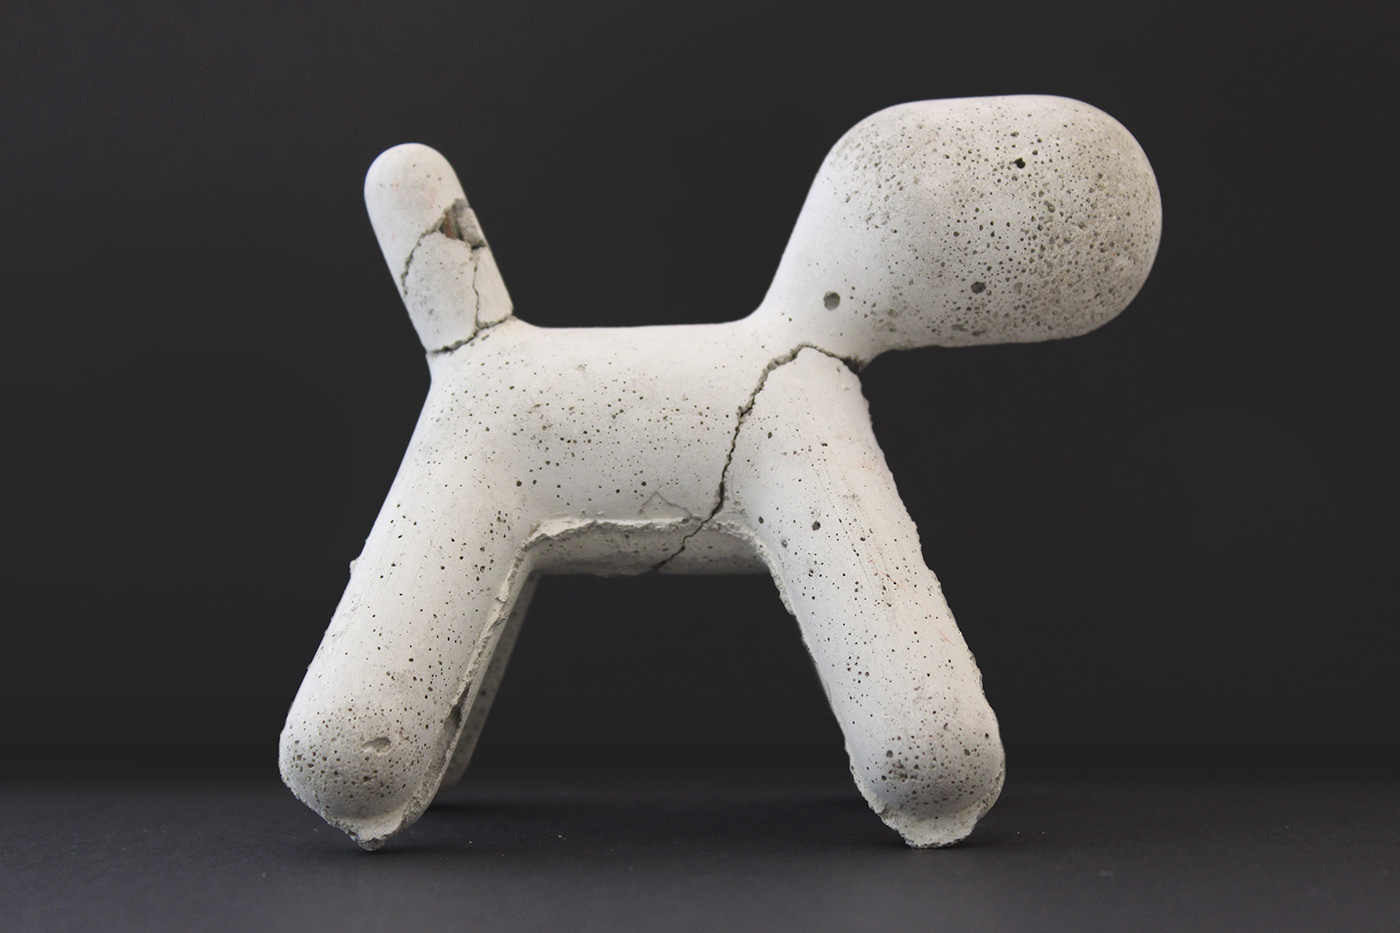 Magis Puppy eero aarnio cement silicon mold epoxy EE components toy